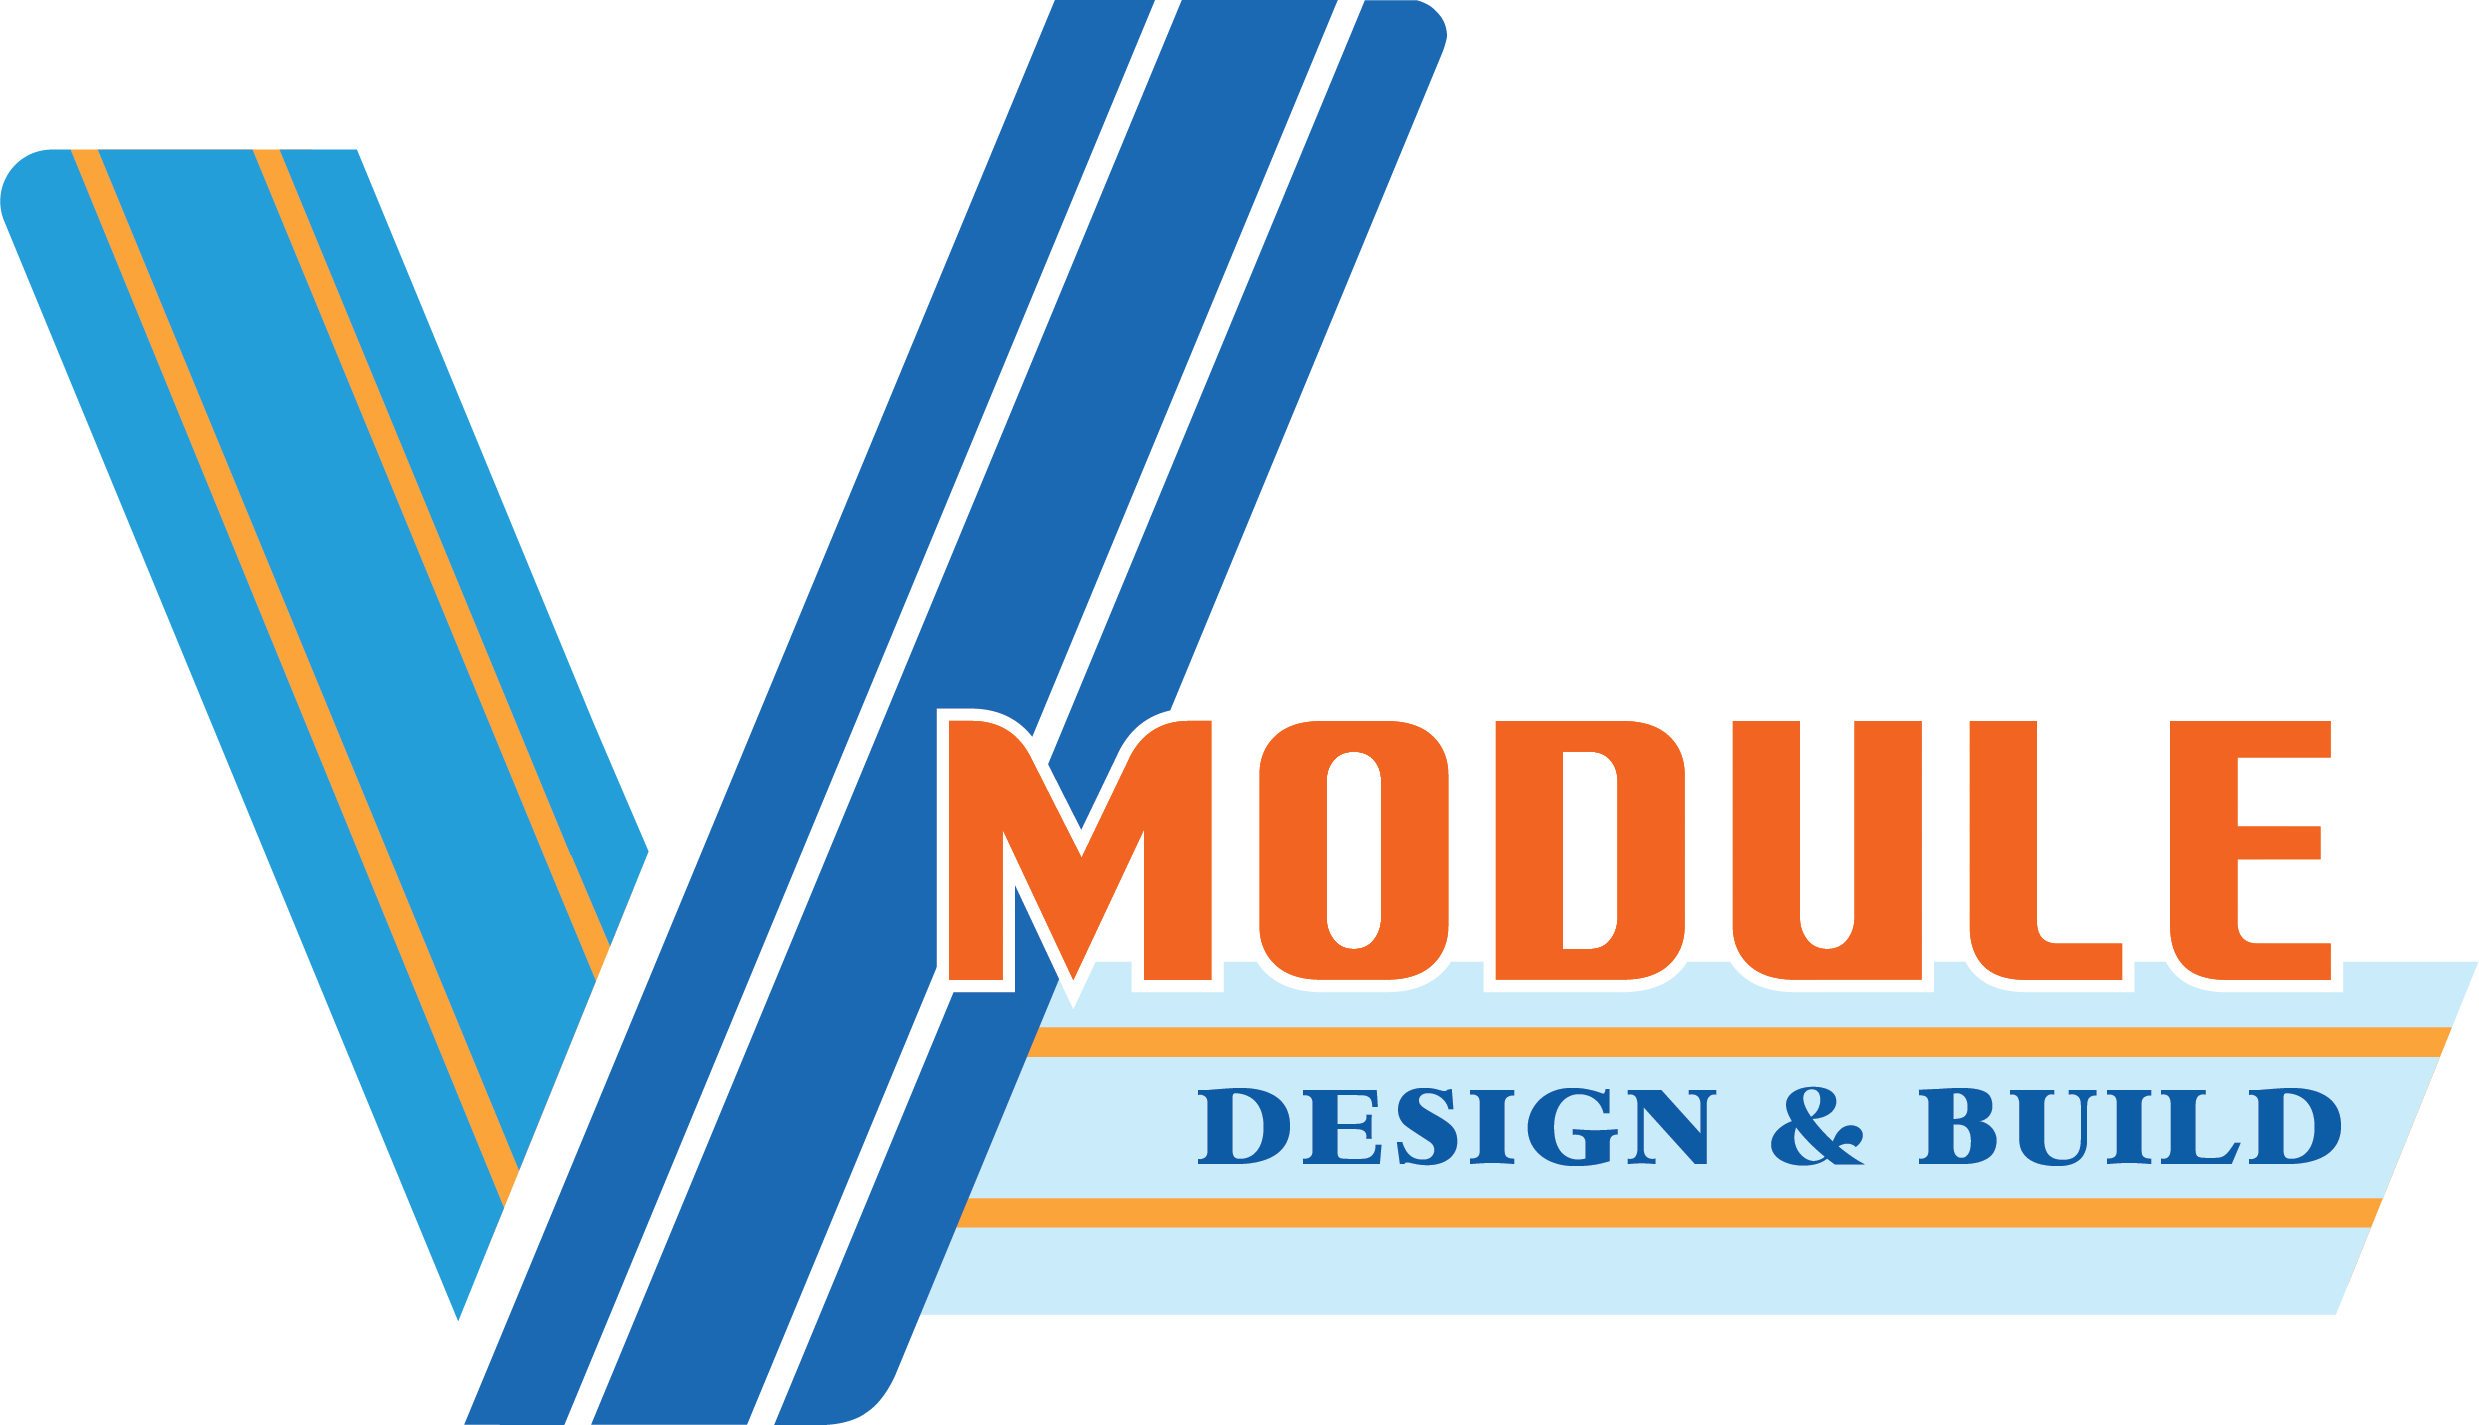 VModule| Design & Build logo